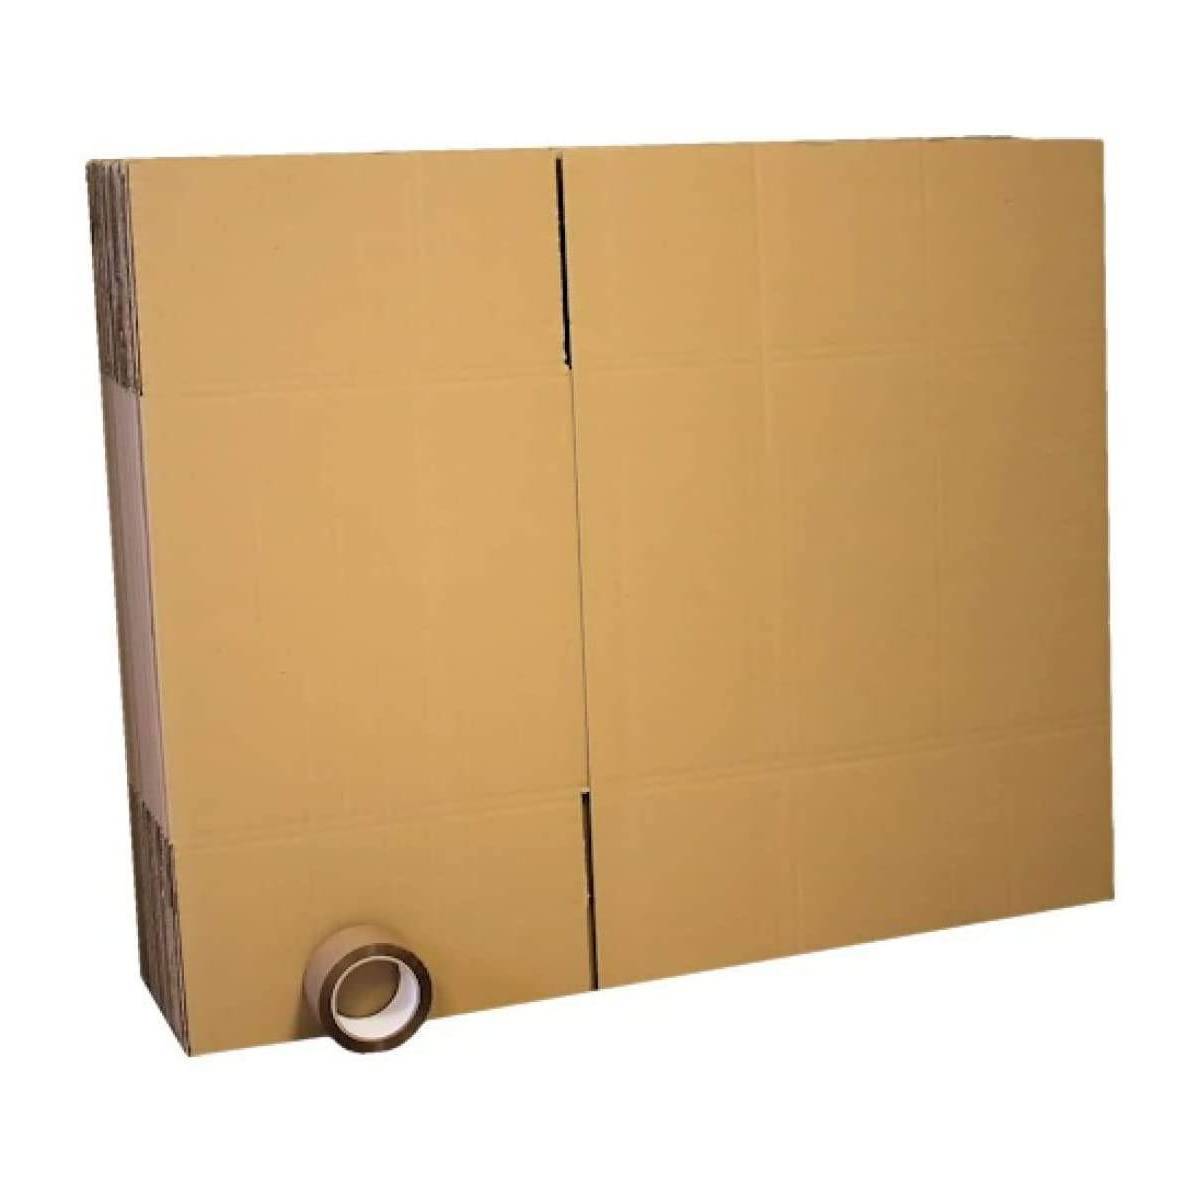 Kit Déménagements Lot de 10 cartons 60x40x40 cm + adhésif - pour déménagements ou expéditions